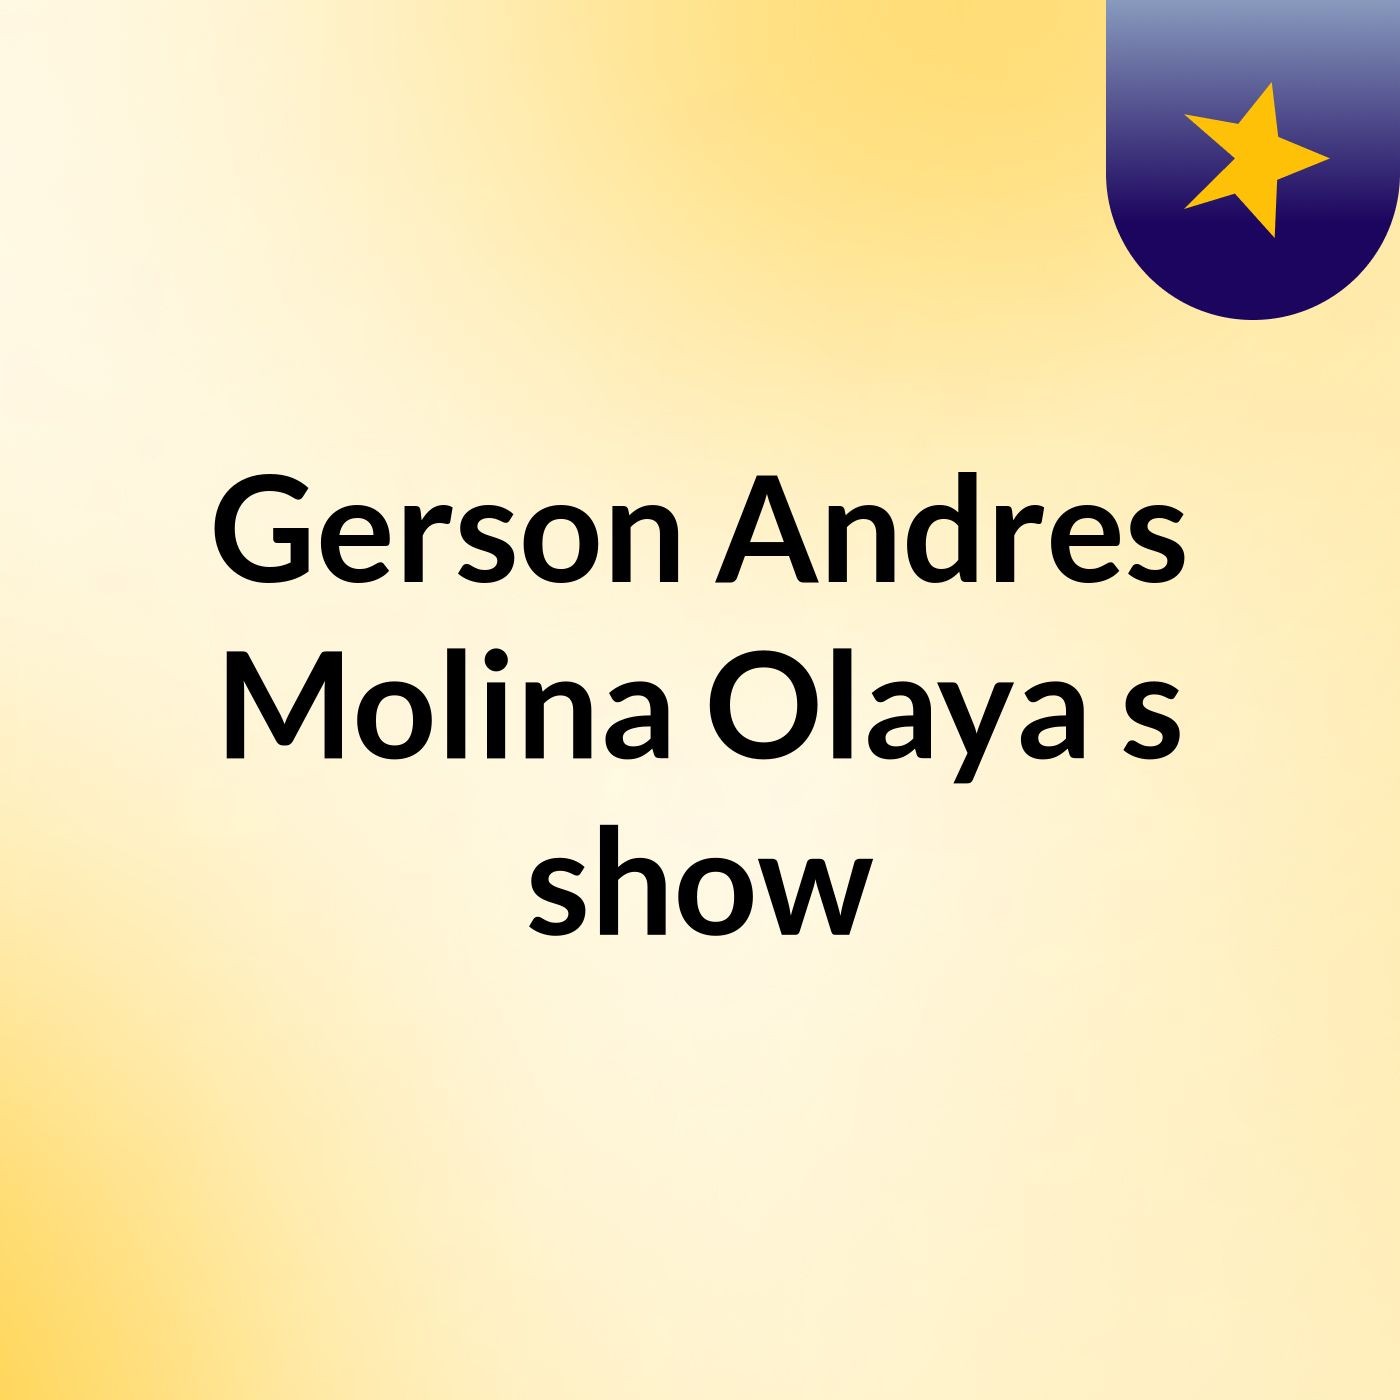 Gerson Andres Molina Olaya's show